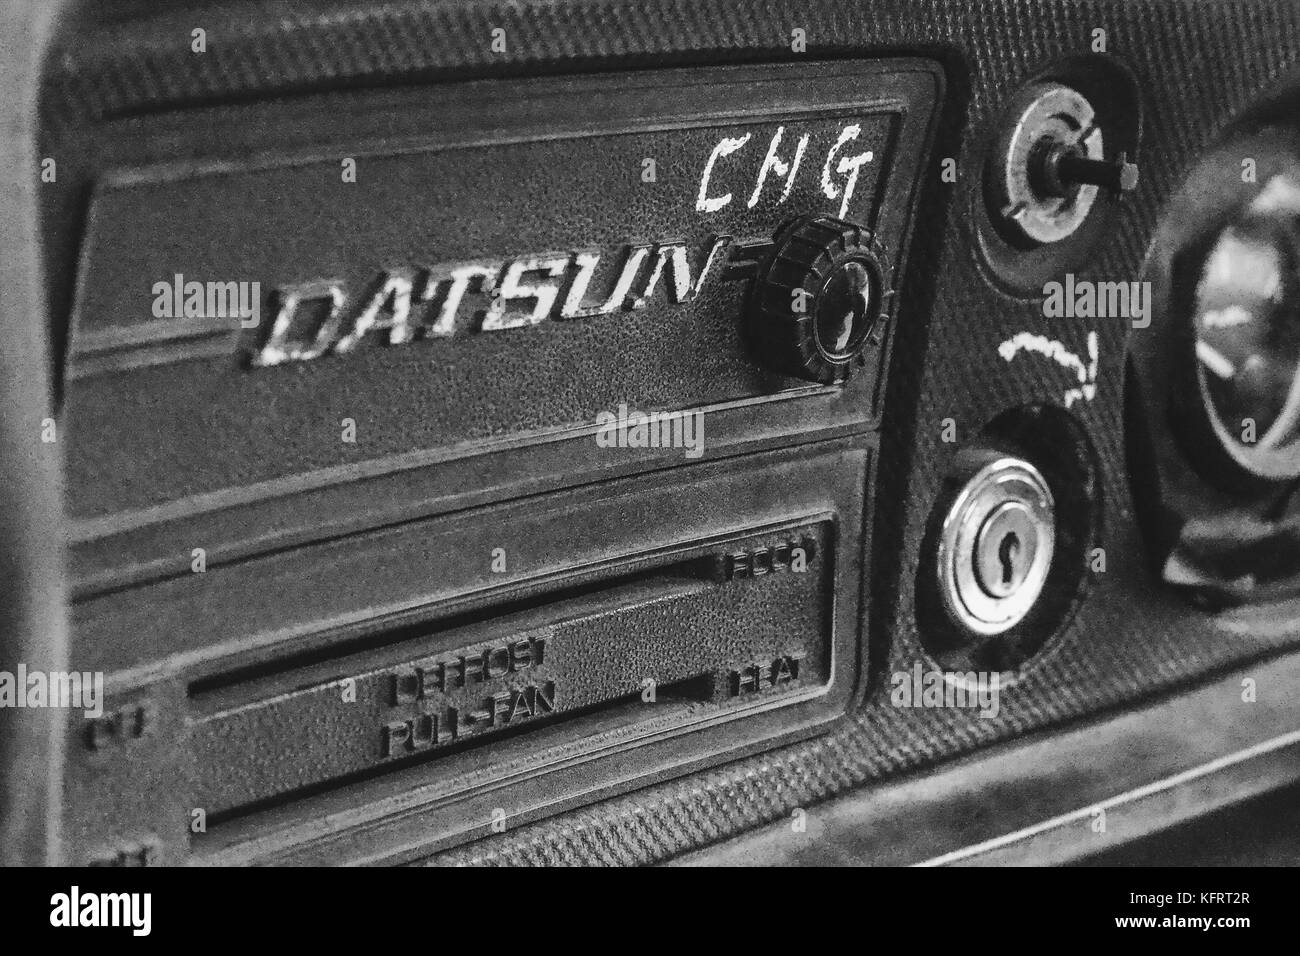 Datsun 1300 nuova immagine Foto Stock